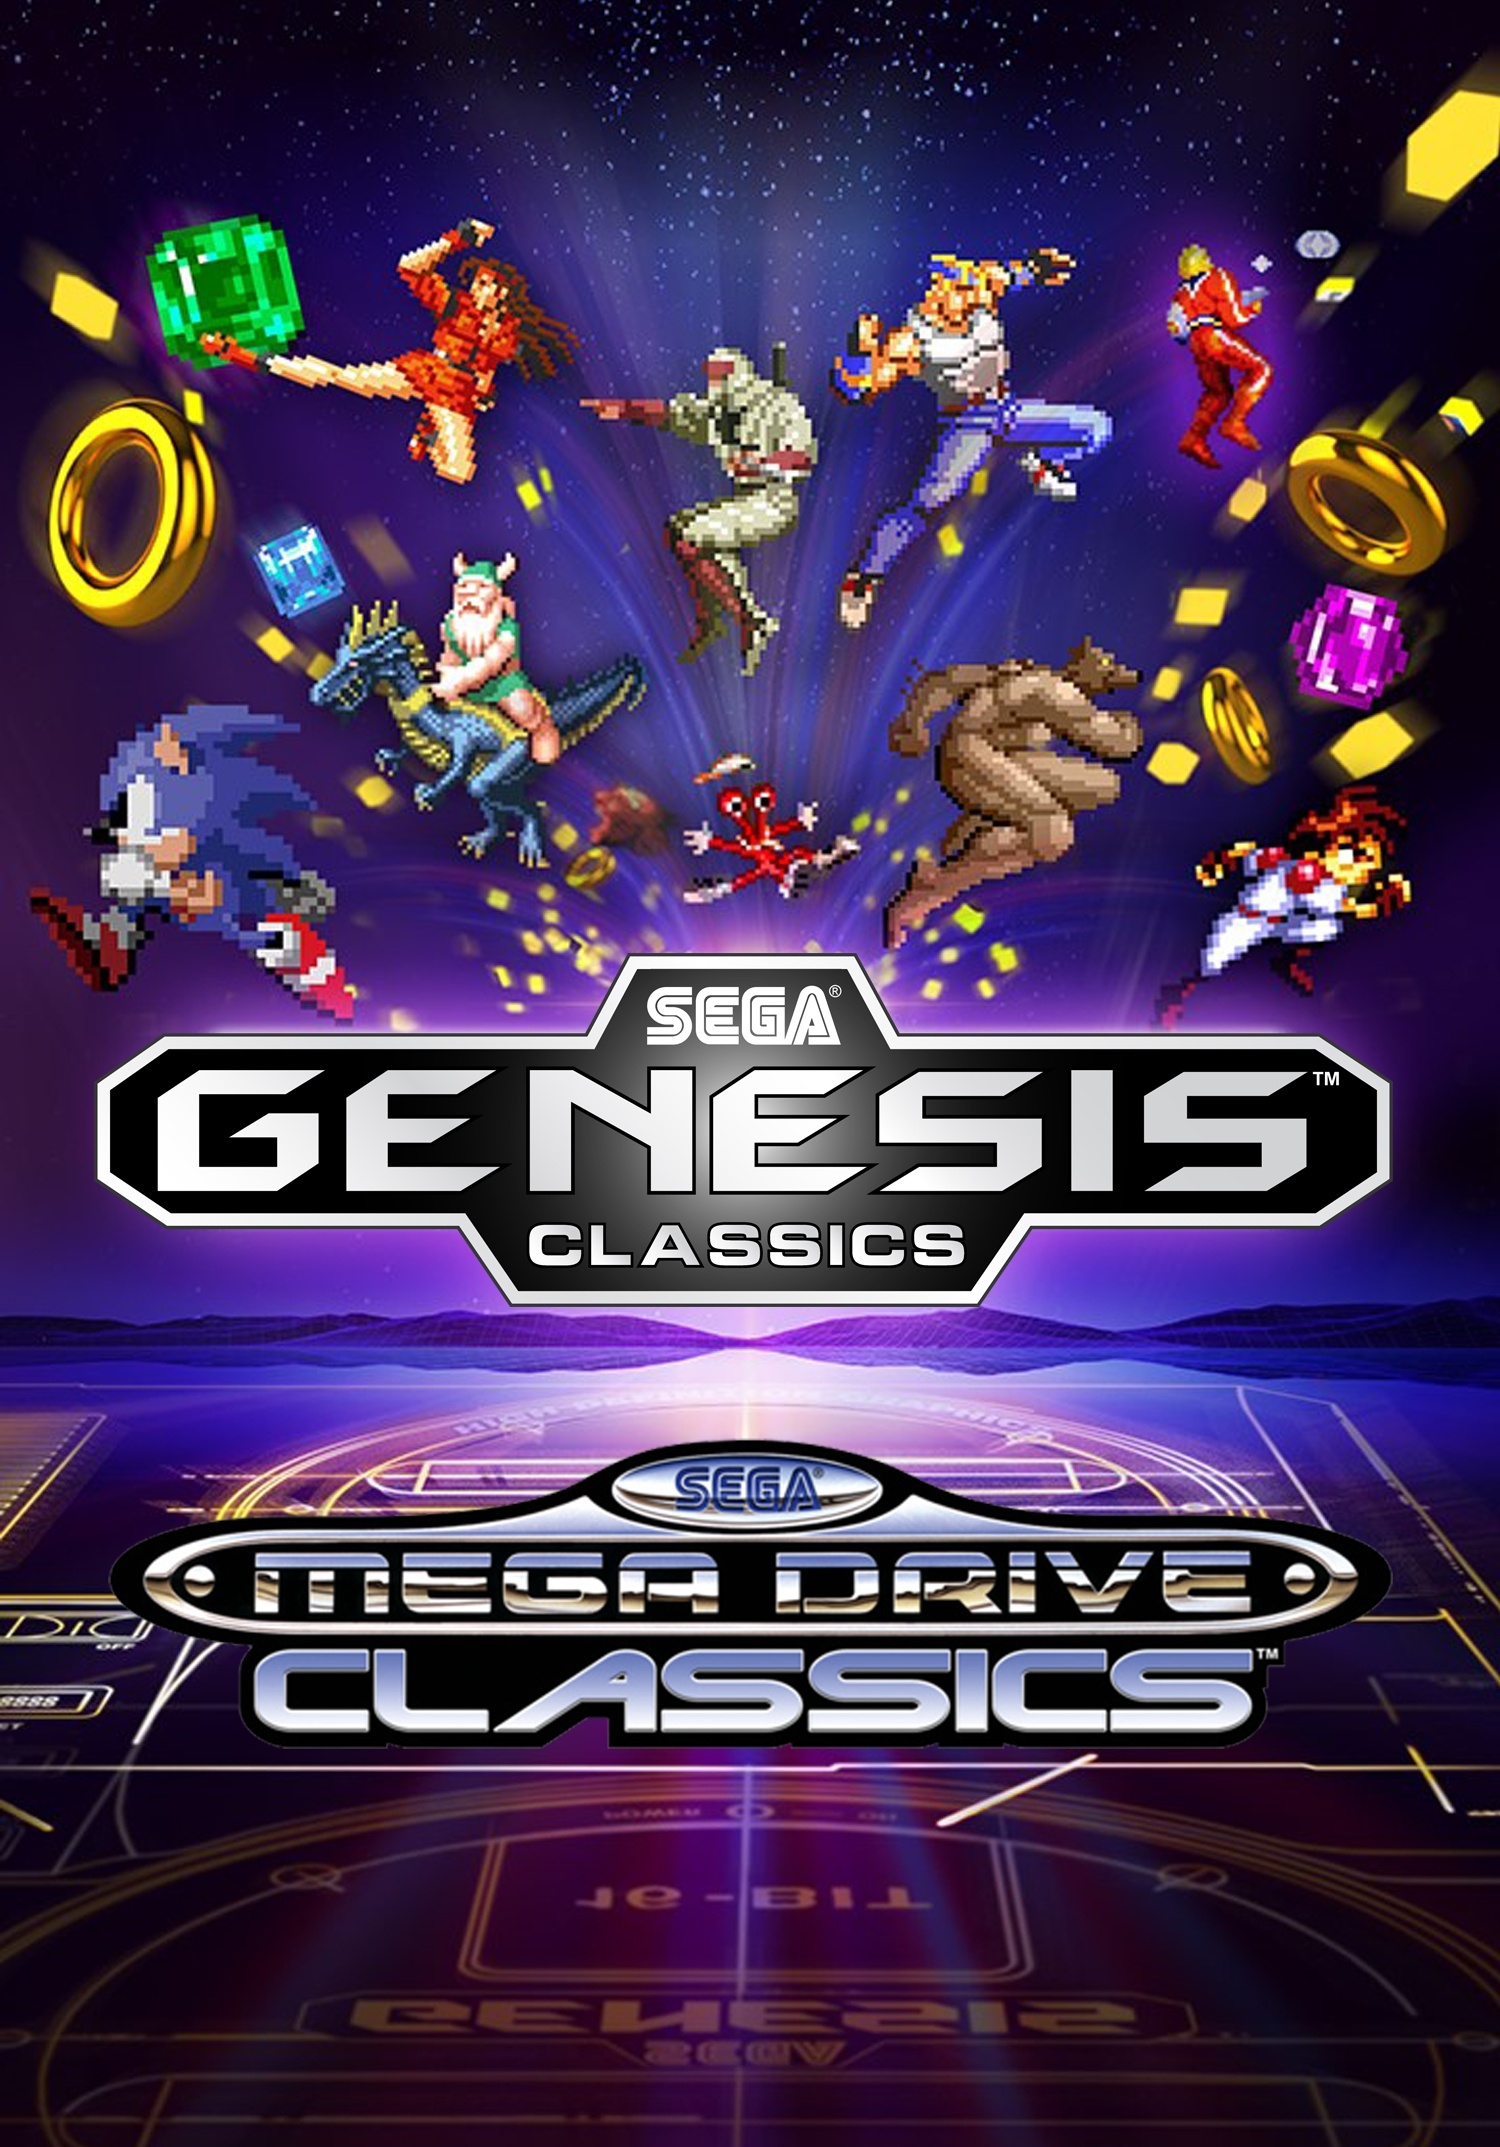 Buy Sega Mega Drive Classics, Nintendo eShop, Classic Sega games, Gaming wallpapers, 1500x2150 HD Phone